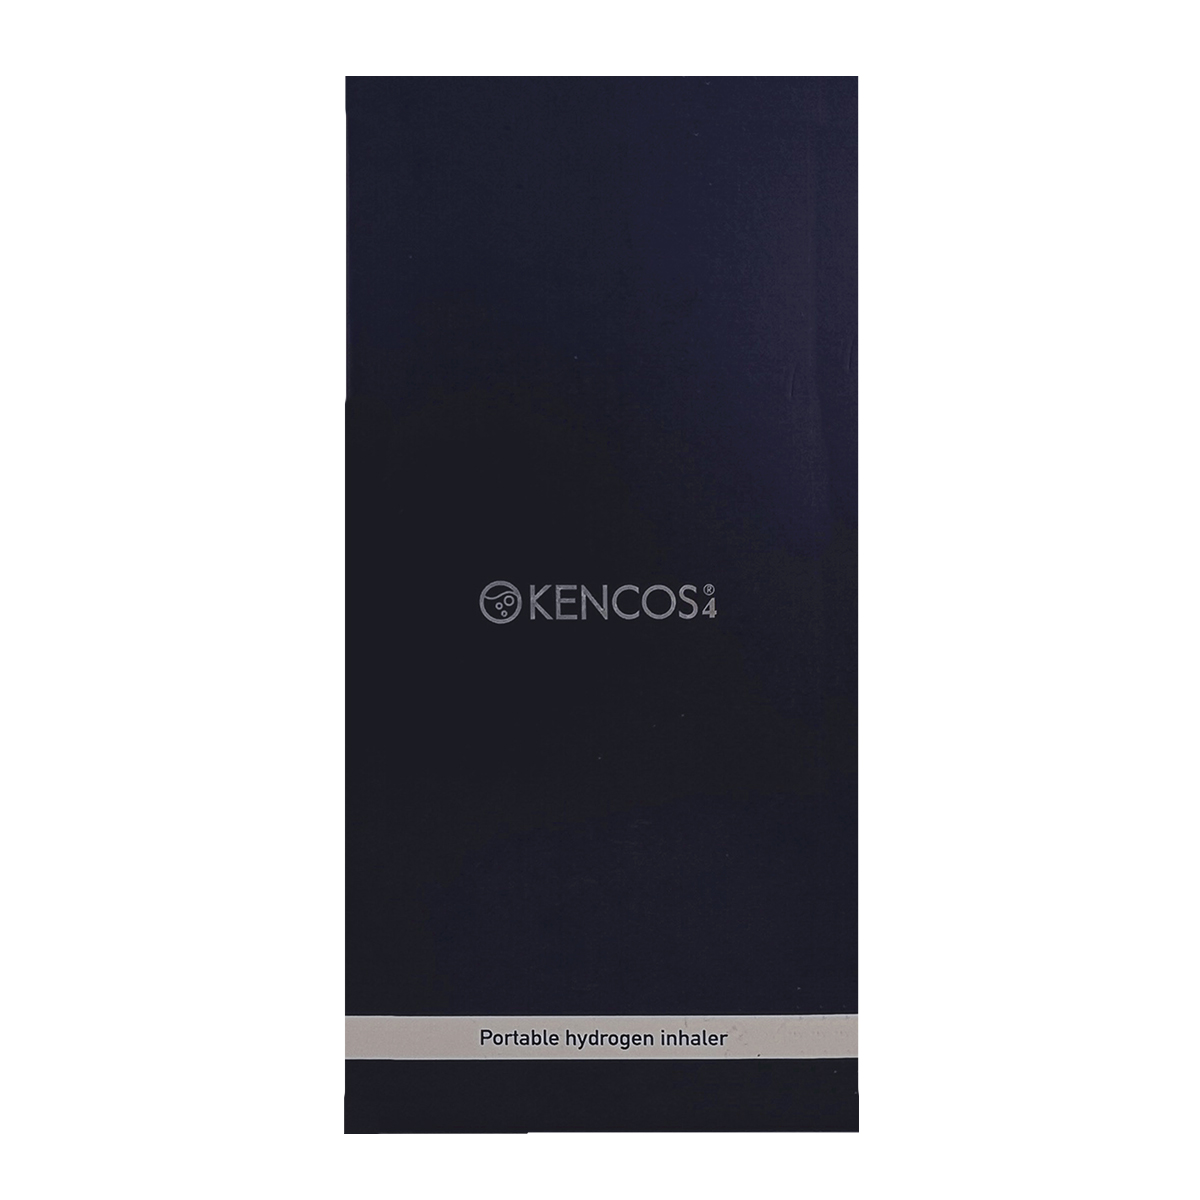 あの携帯できるポータブル水素ガス吸引具からKENCOS4が発売ｌ新機能が付加・お洒落なフォルムになって登場｜アクアバンクオンラインカタログ-KENCOS （ケンコス）公式ショップ-